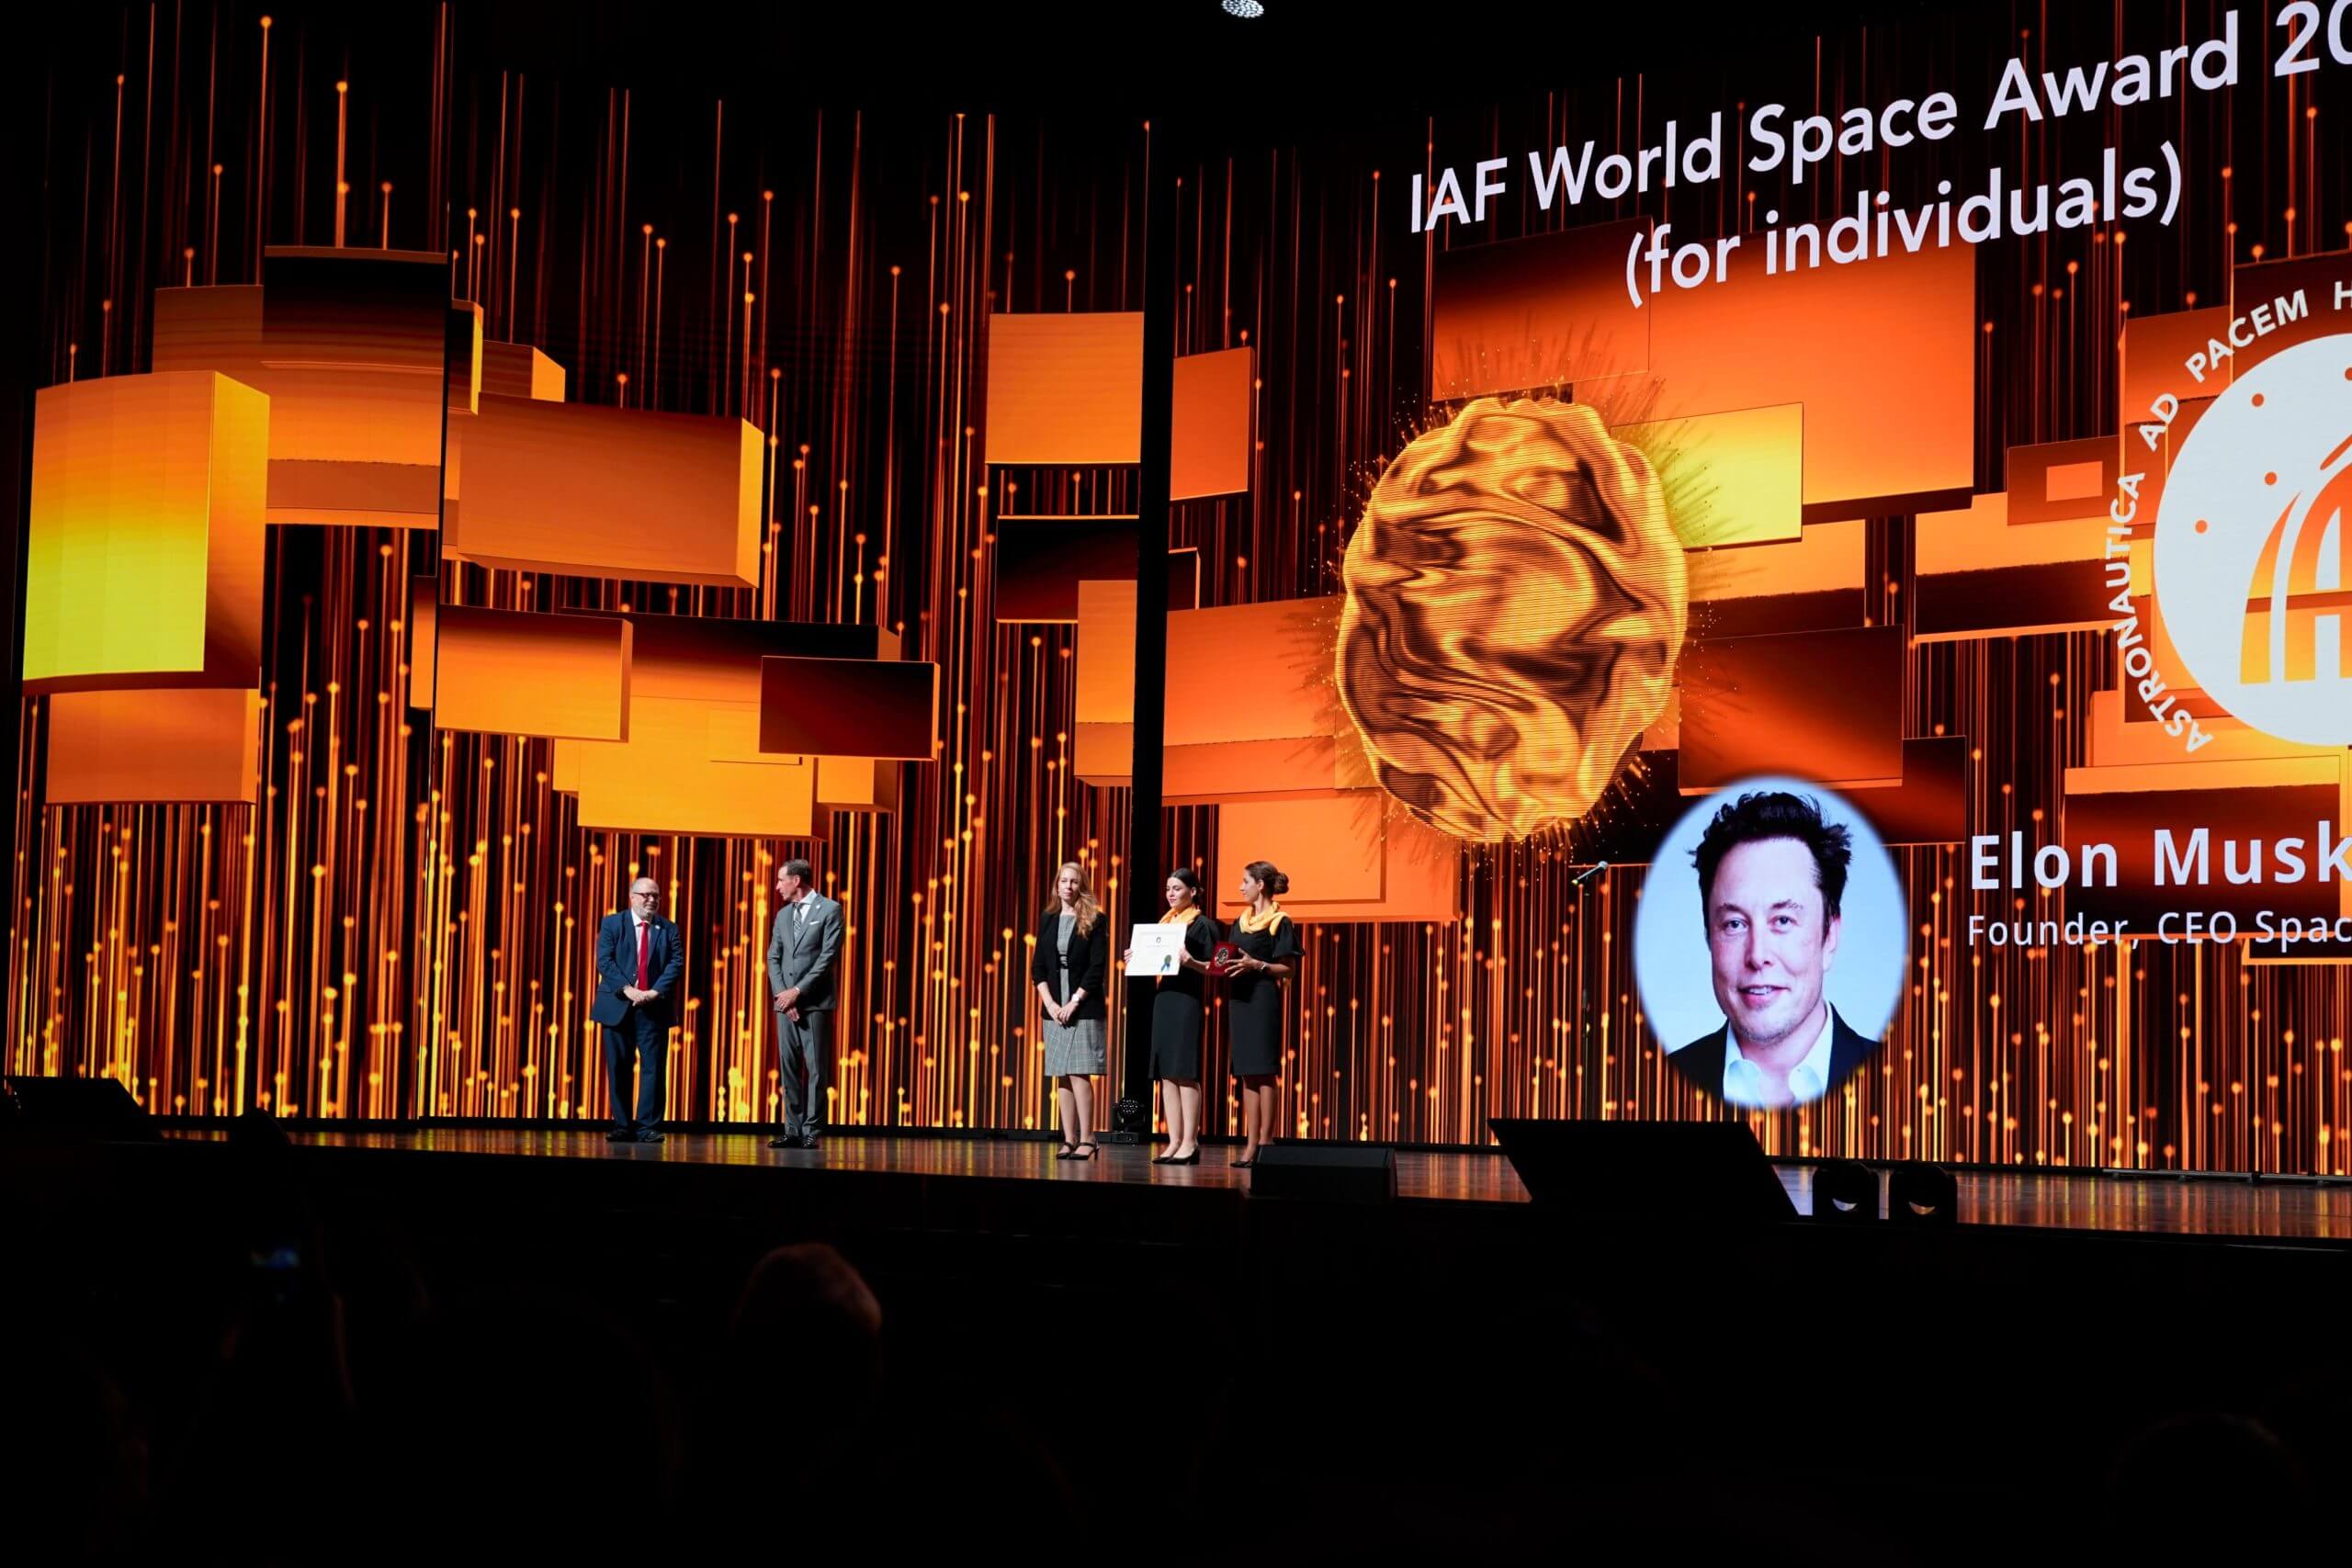 فاز إيلون ماسك من شركة SpaceX بجائزة الفضاء العالمية التي يمنحها الاتحاد الدولي للملاحة الفضائية (IAF) في المؤتمر الدولي الرابع والسبعين للملاحة الفضائية